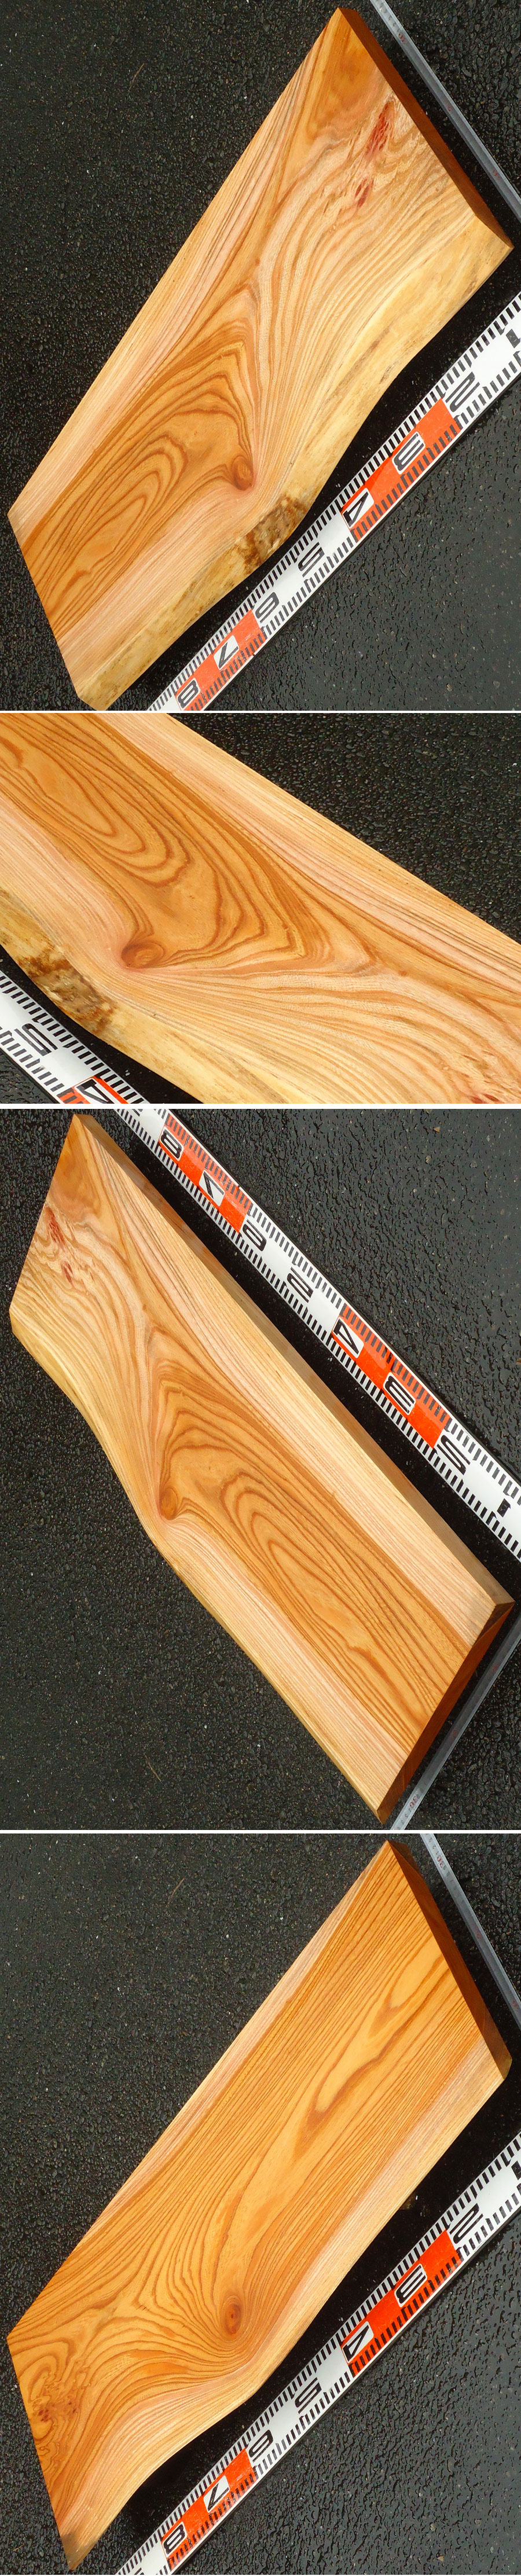 圖片中櫸木的面宽度289132厘米,厚度25mm的长度90厘米.